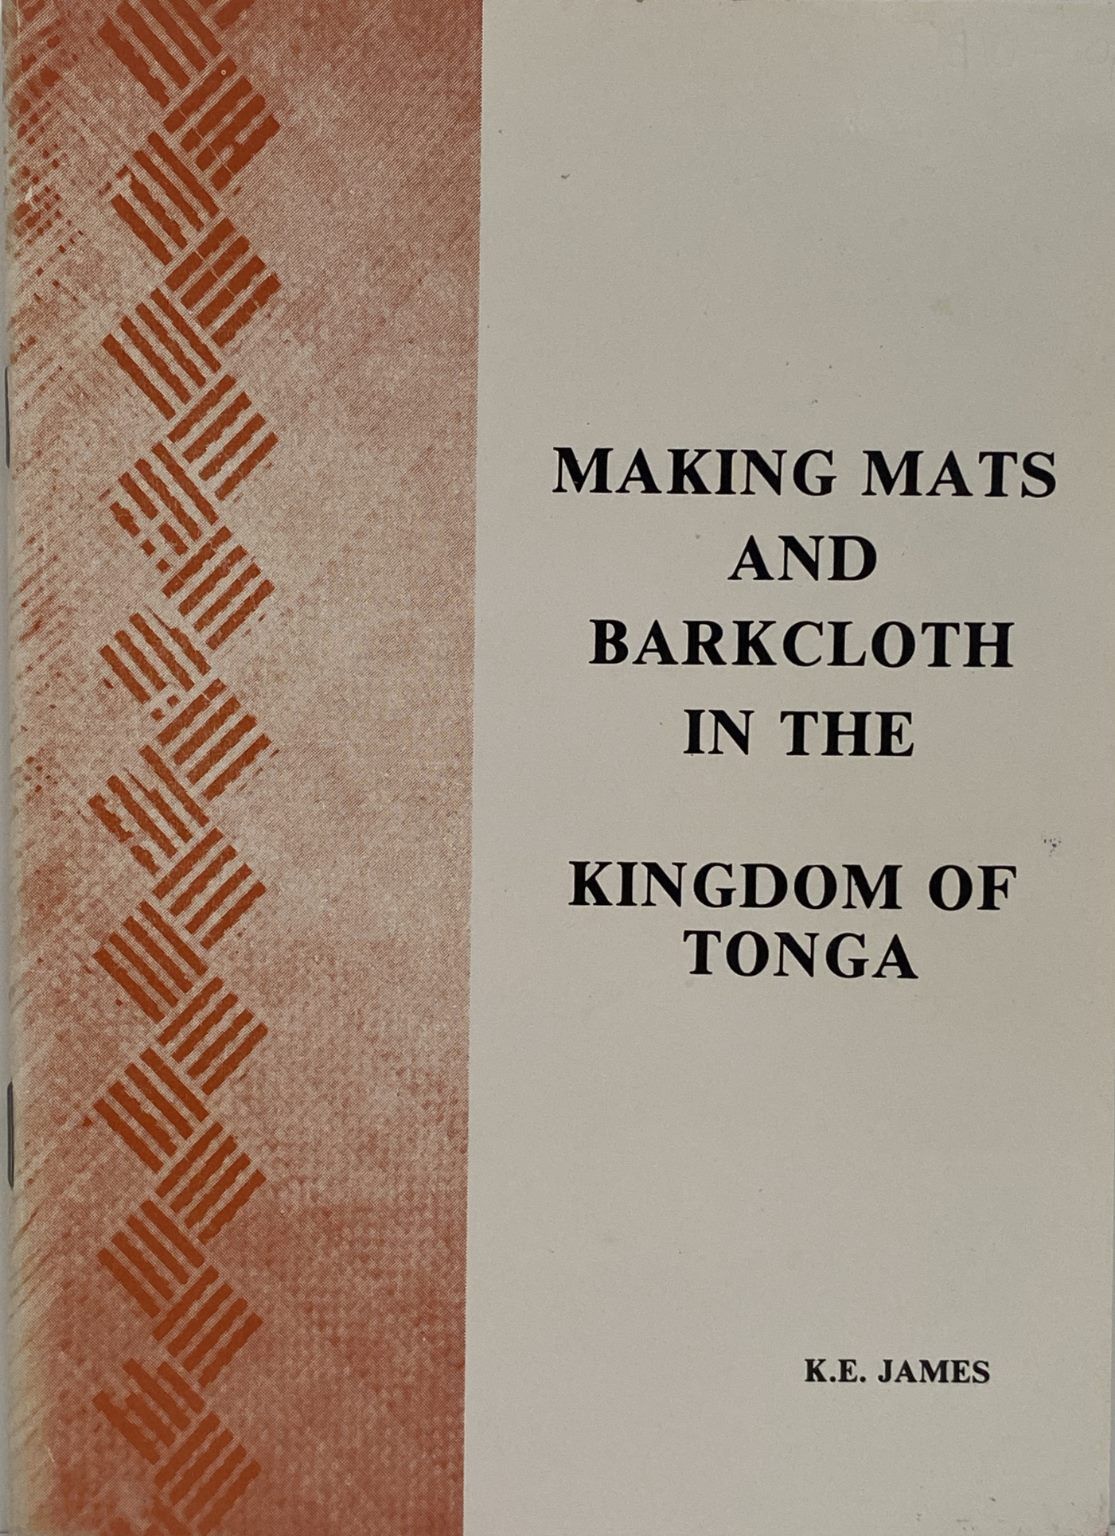 MAKING MATS AND BARKCLOTH: In the Kingdom of Tonga